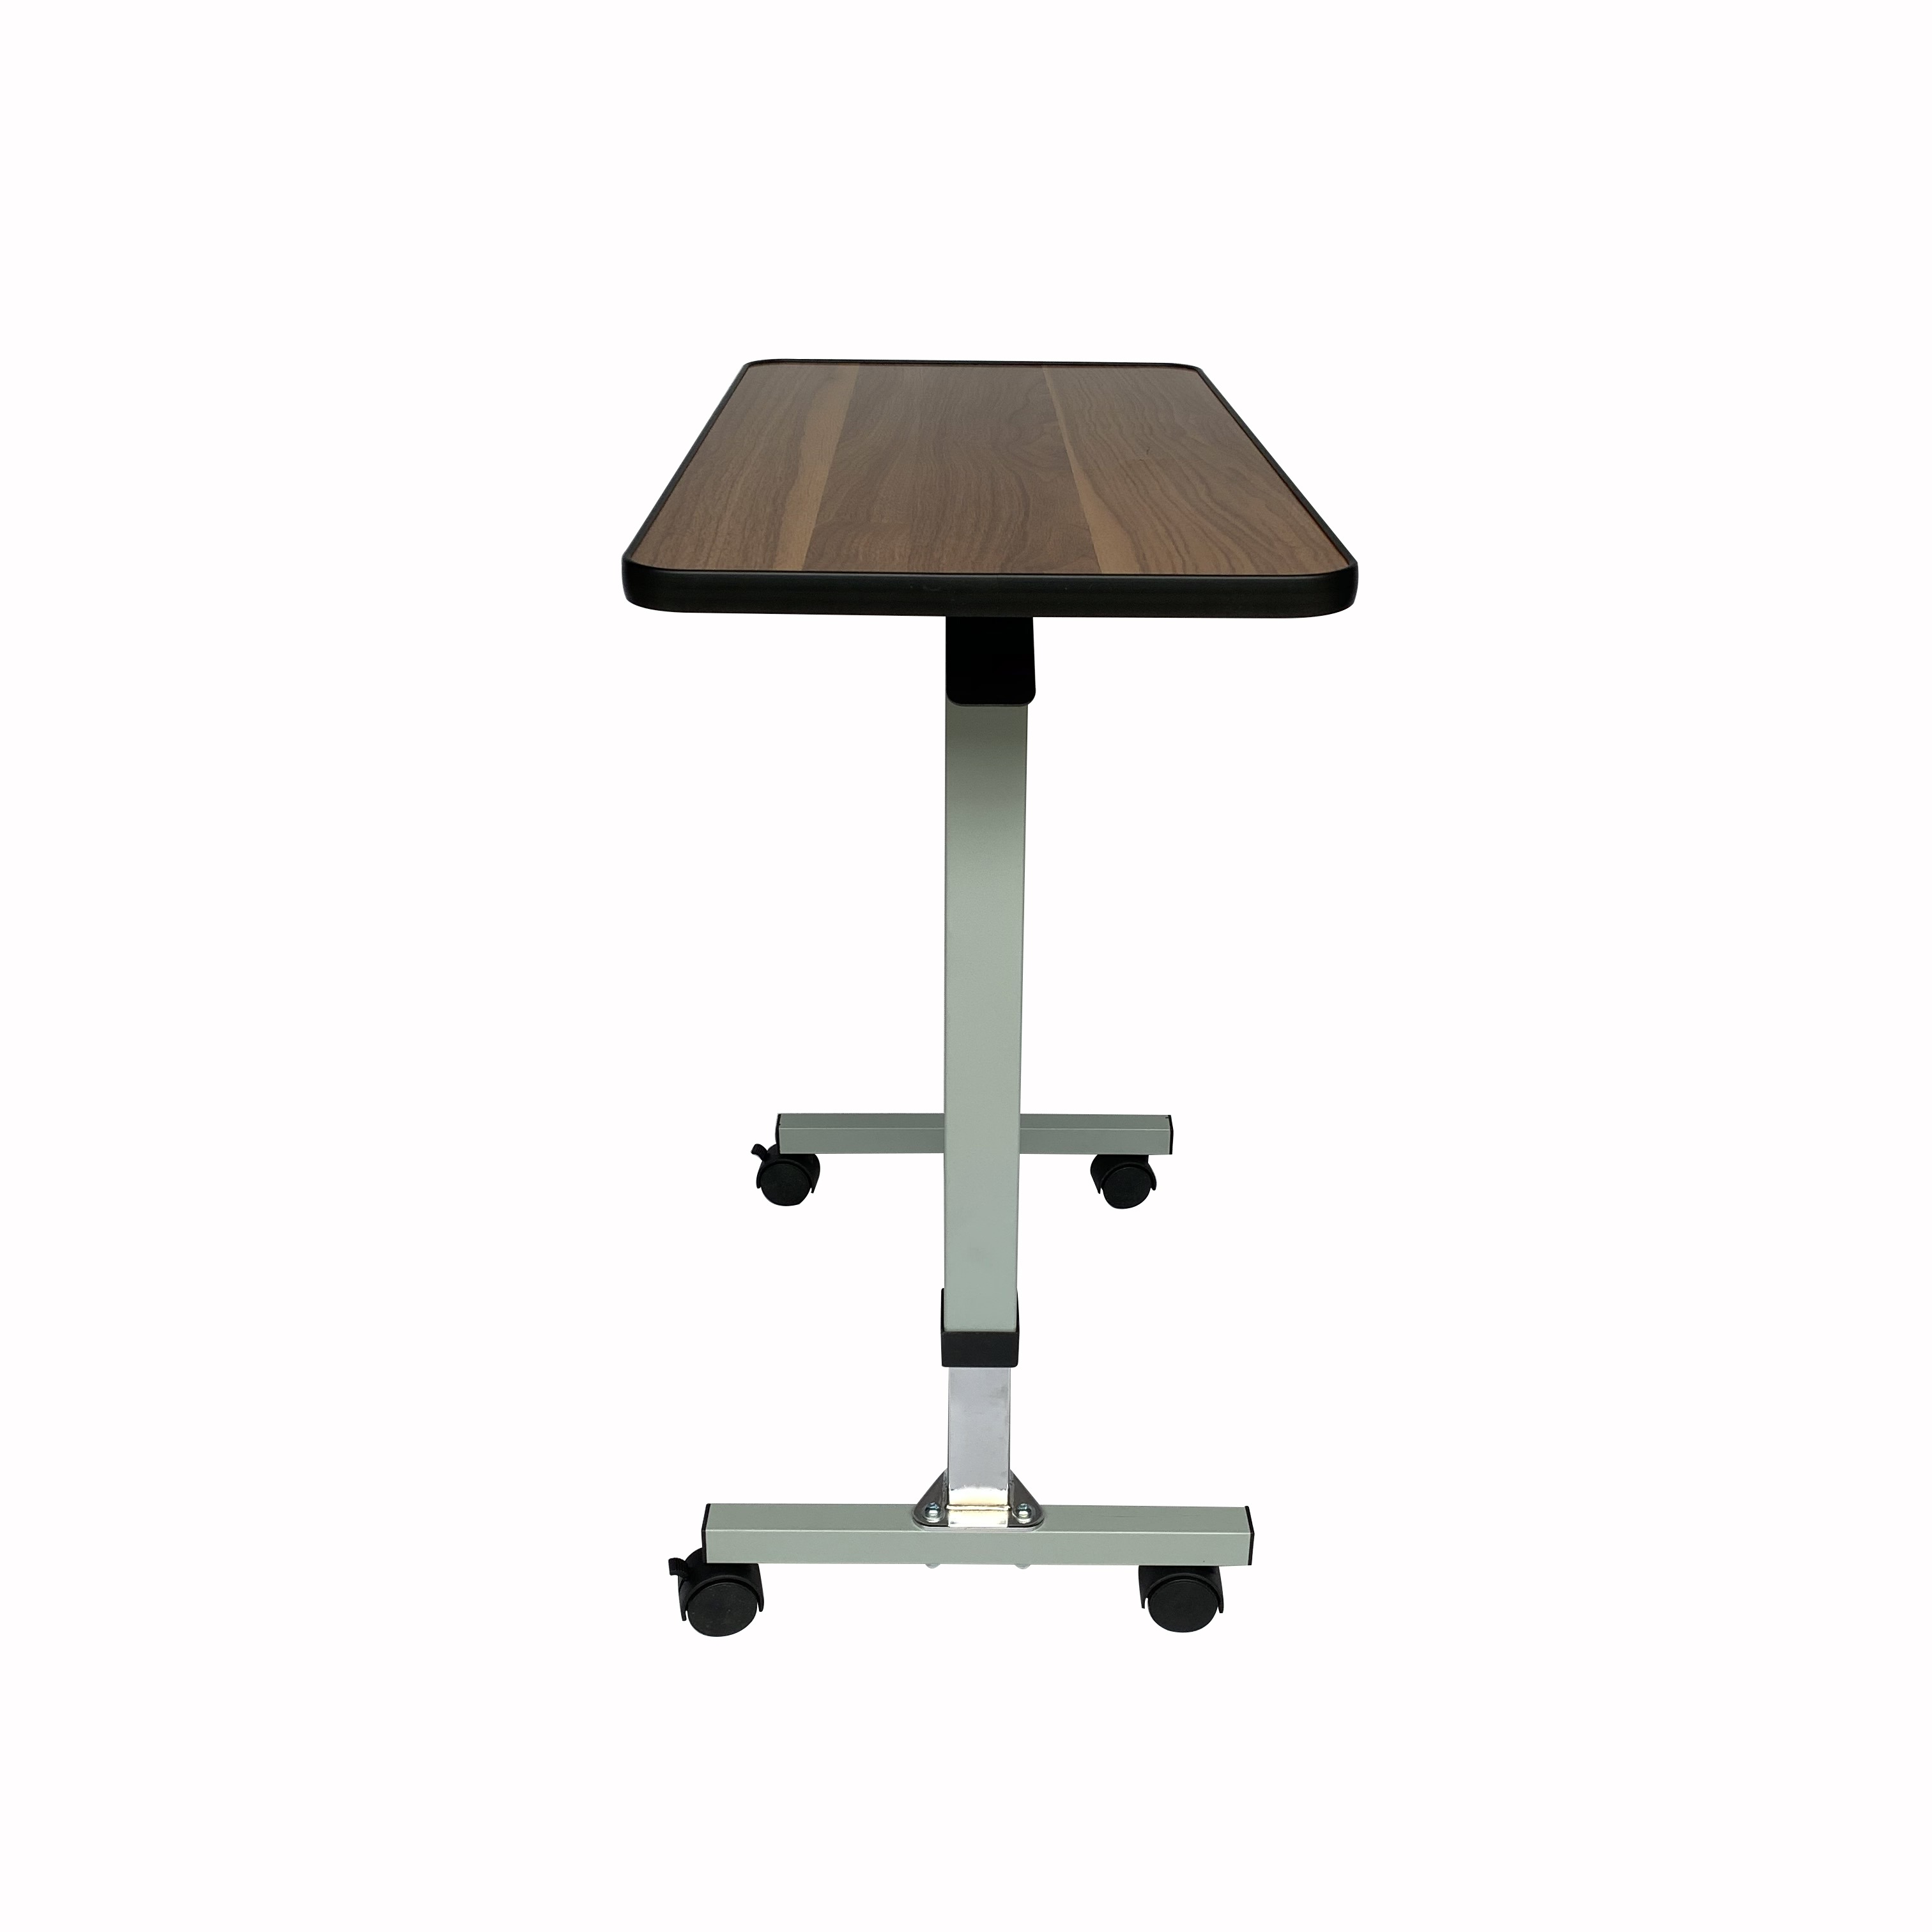 Łatwy regulowany stolik nocny Szybki i łatwy montaż nad stolikiem z blokującym obrotowym kółkami